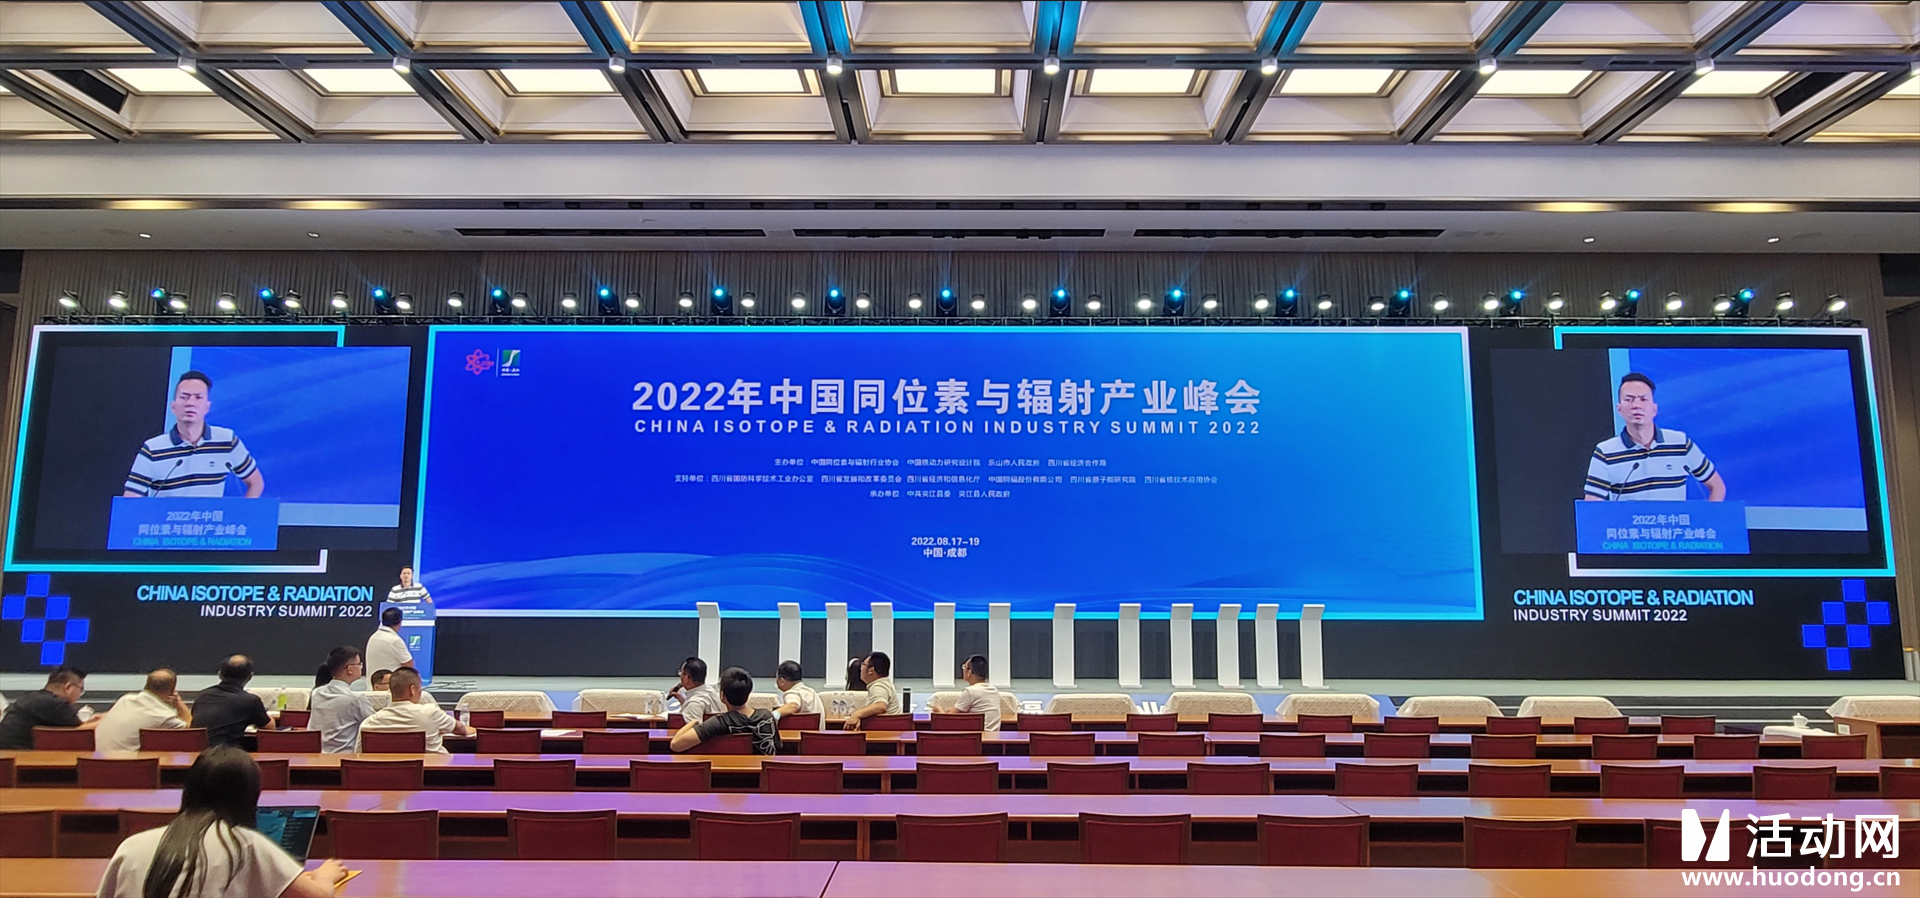 2022年中国同位素与辐射产业峰会ipad电子签约